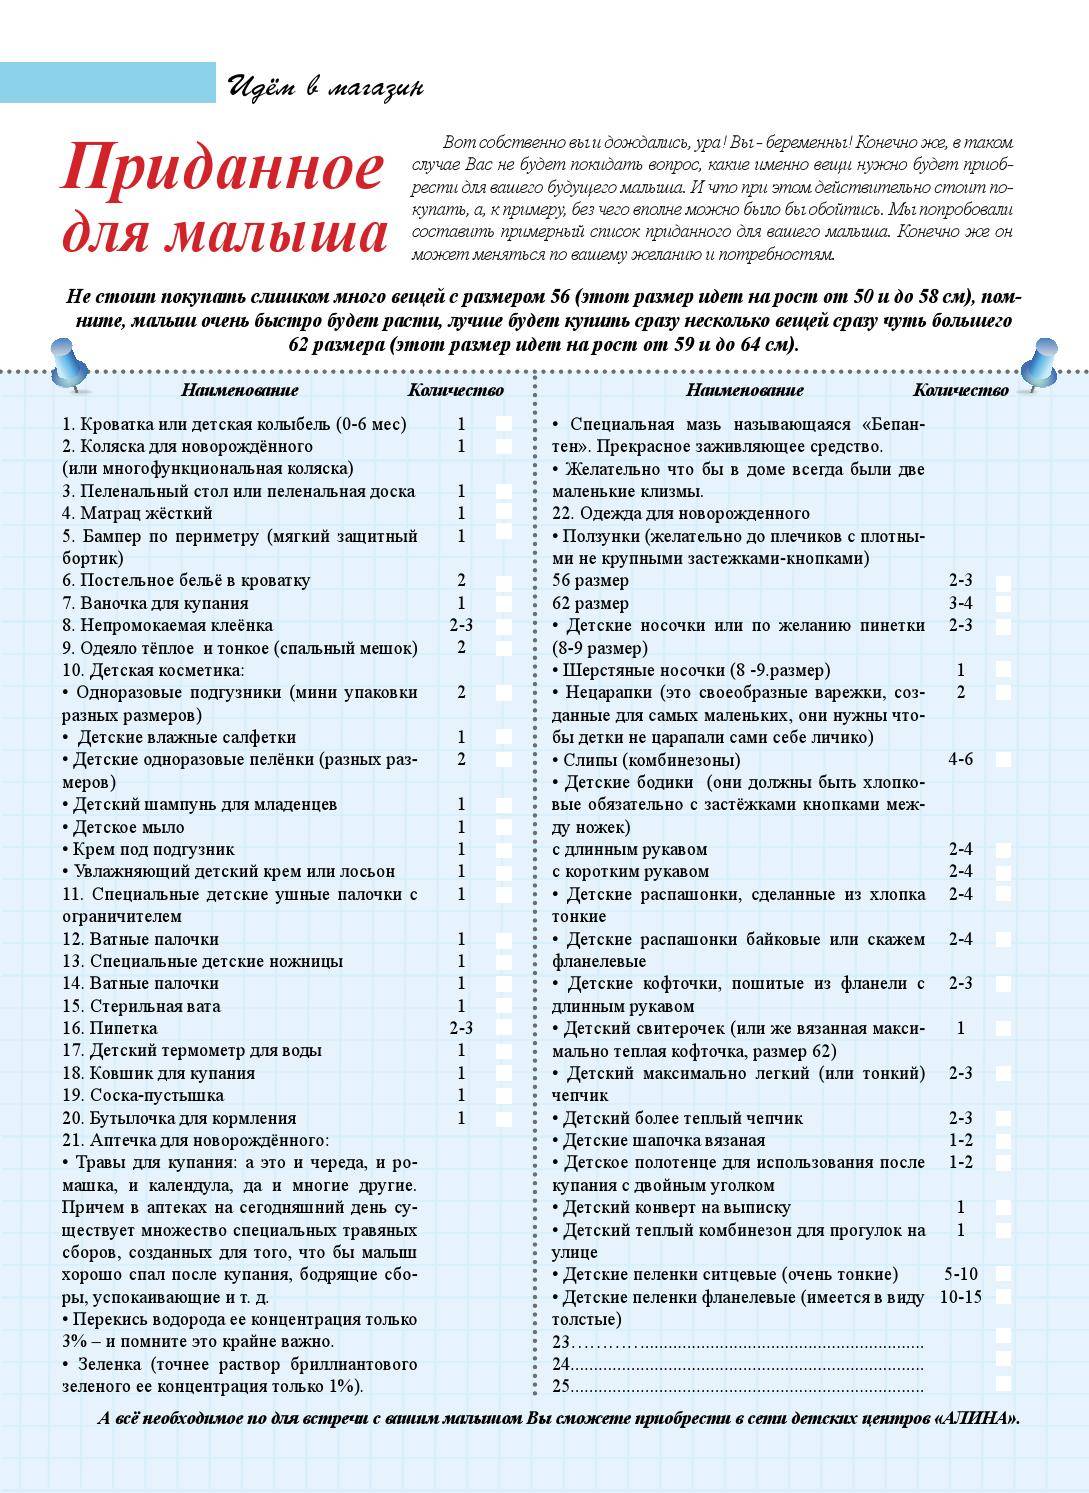 Аптечка для новорожденного: список необходимых препаратов :: syl.ru